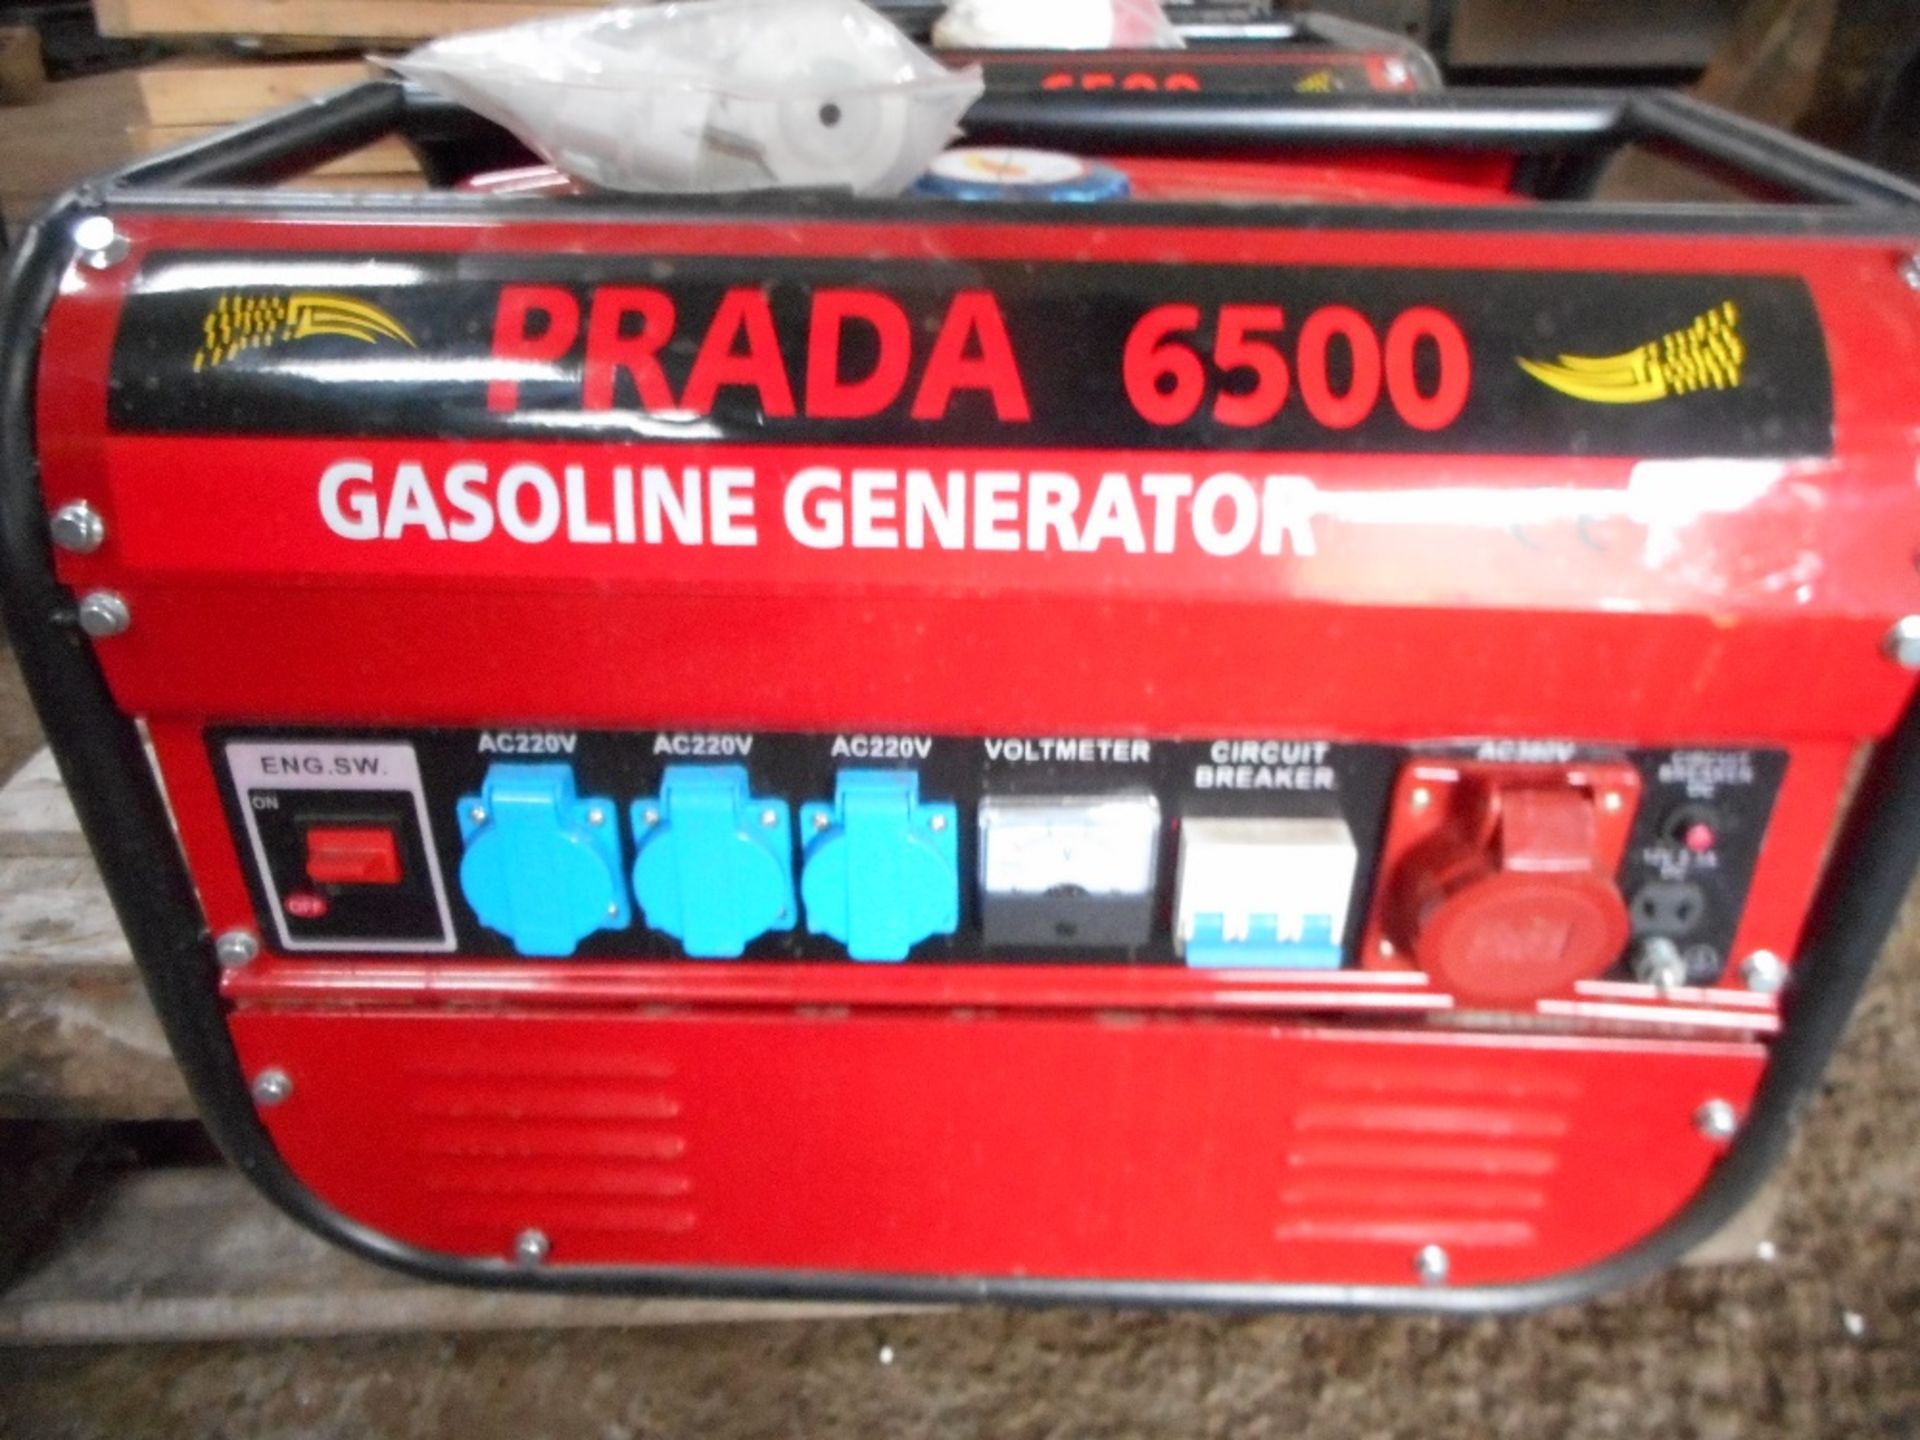 3no. Prada 6500 petrol generators. - Image 2 of 2